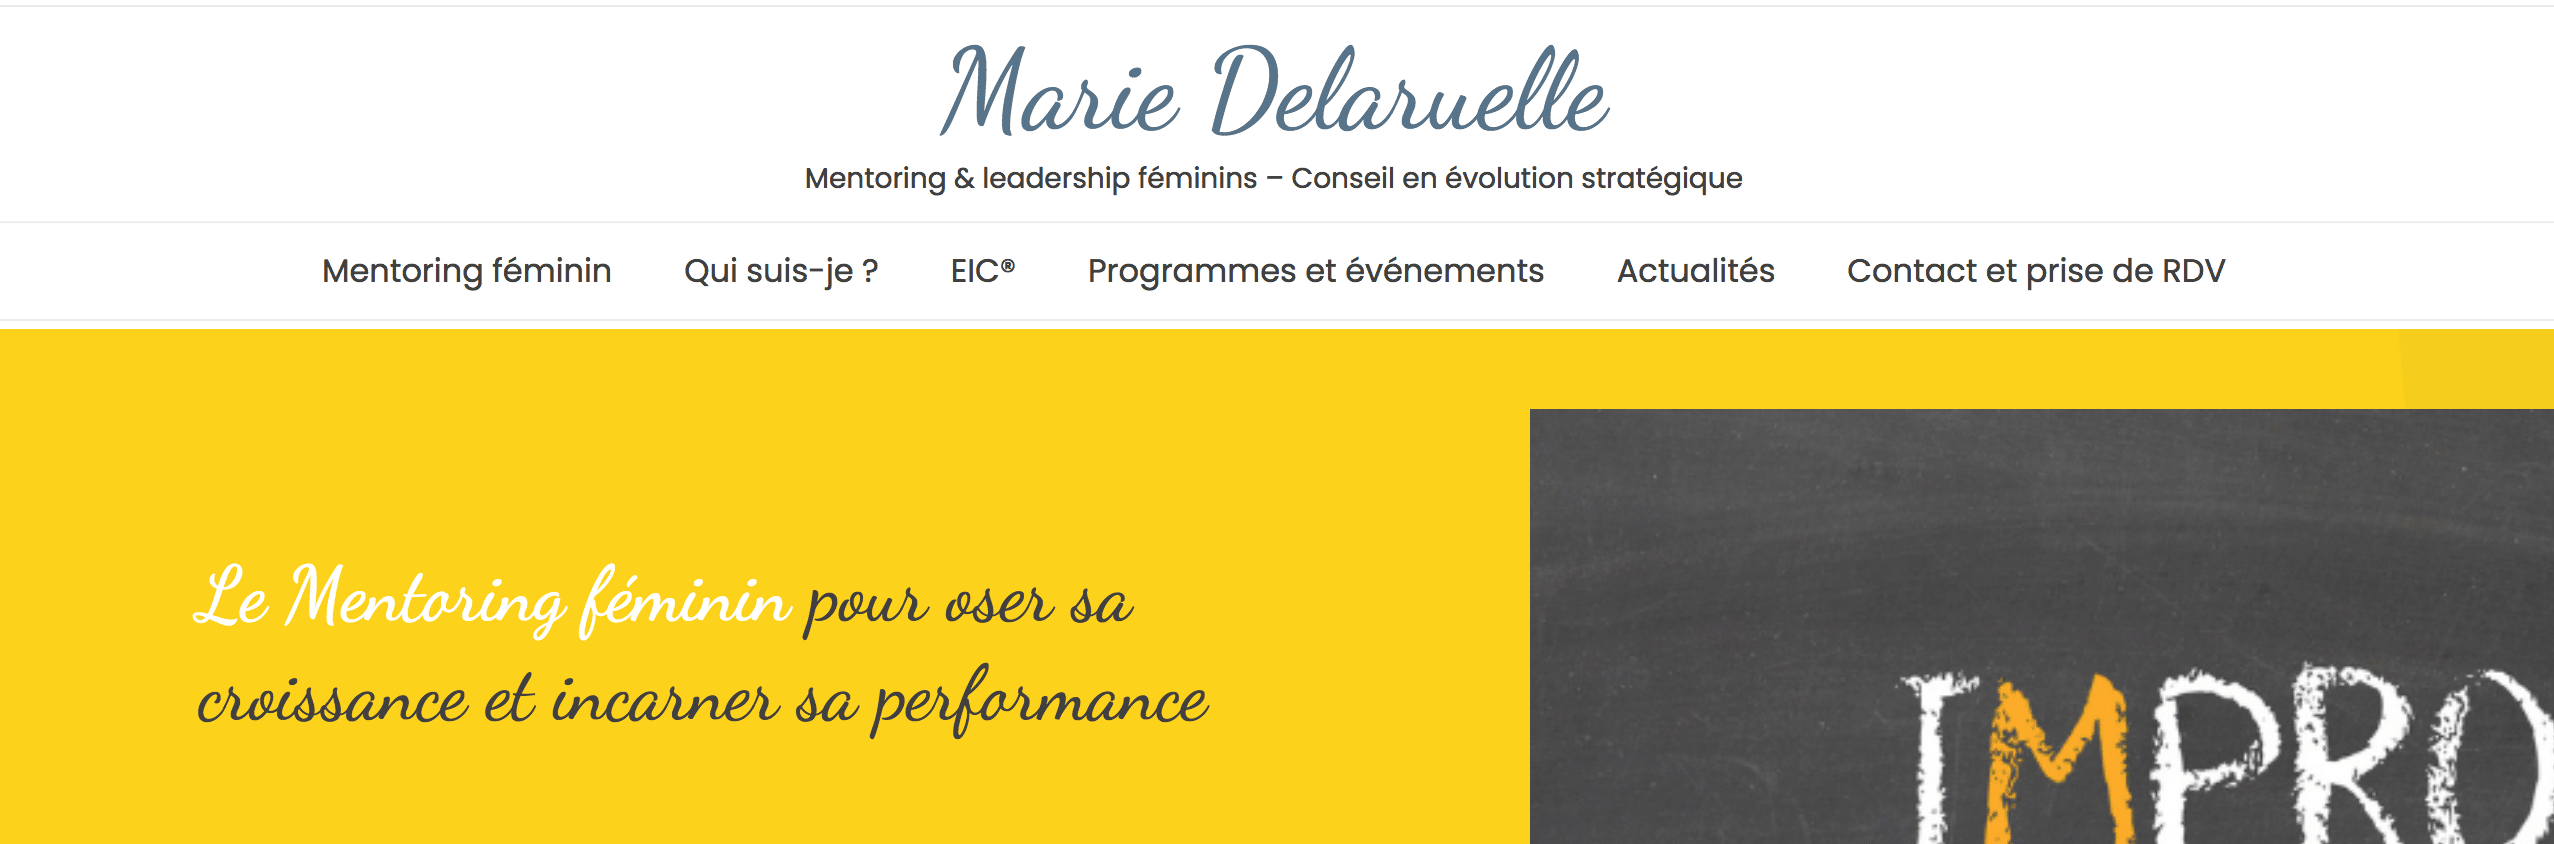 Création du site Marie Delaruelle Mentoring